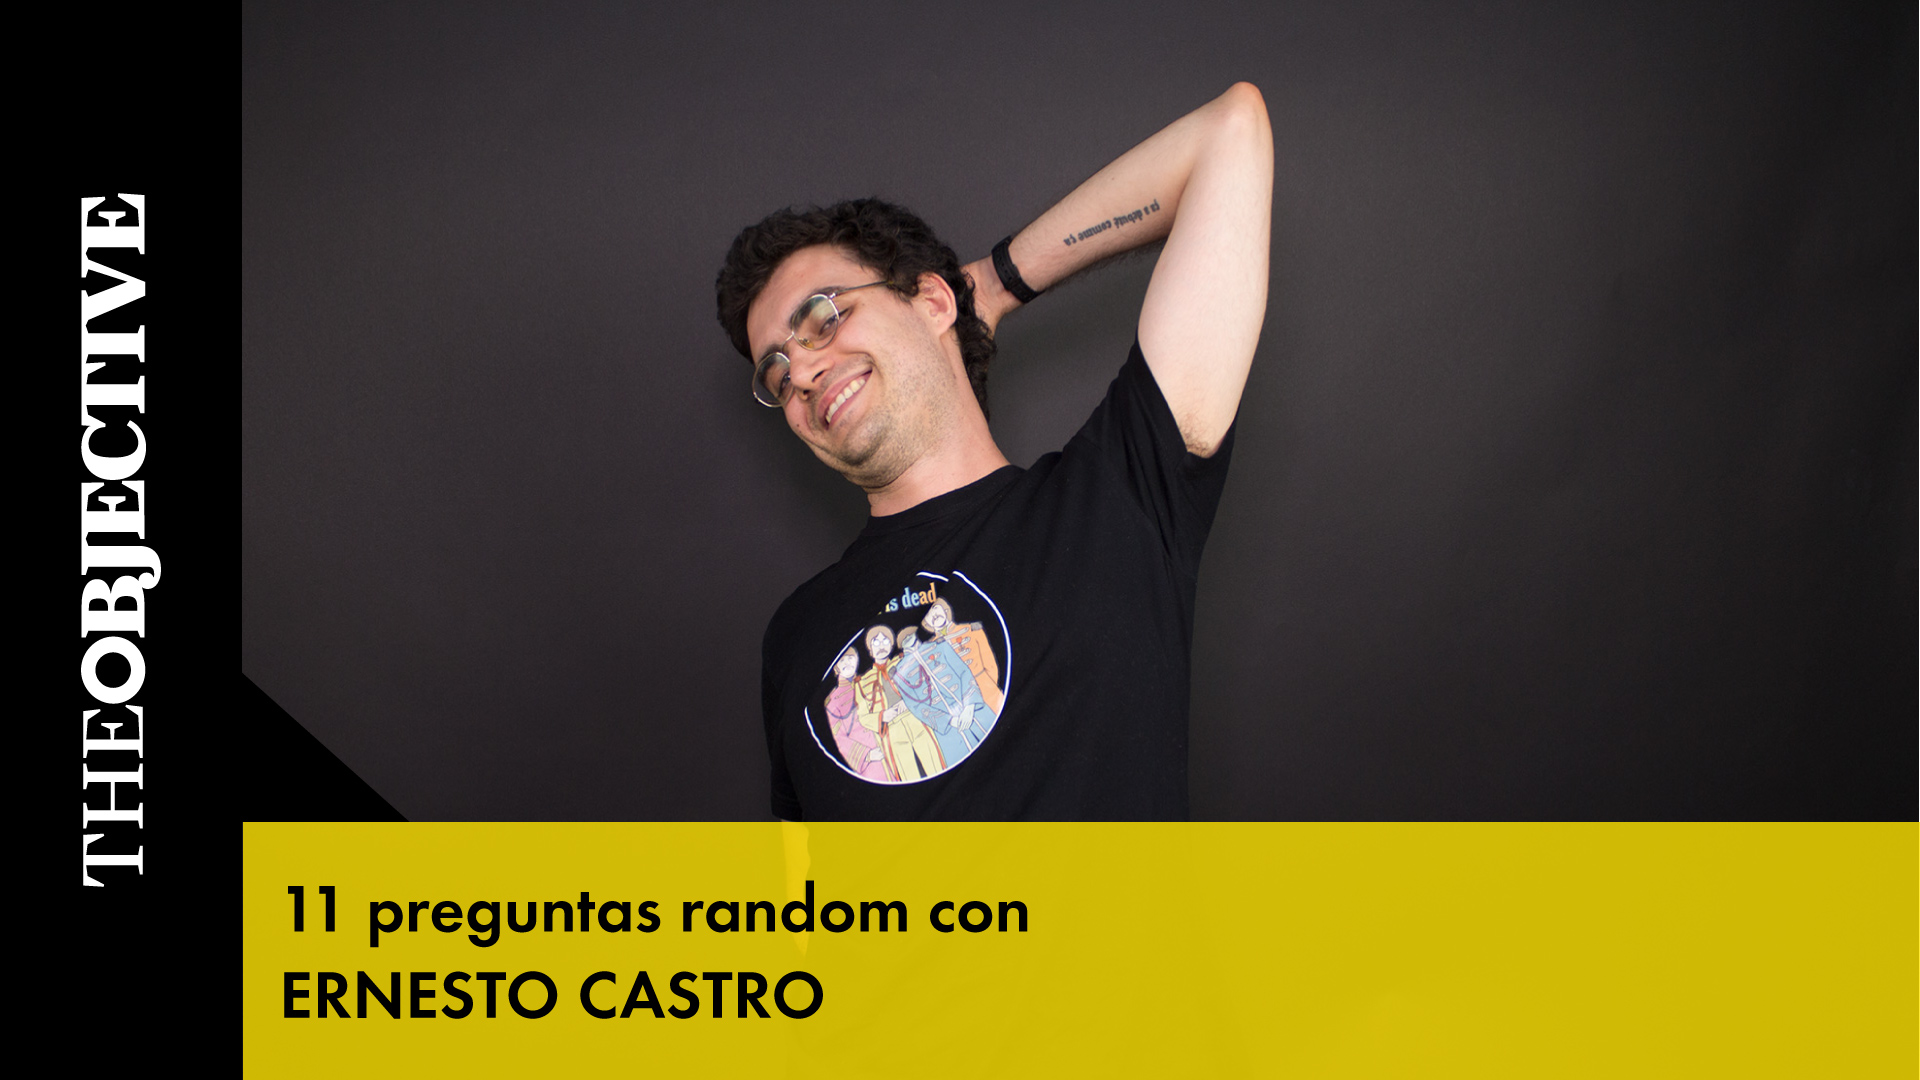 11 preguntas random con Ernesto Castro